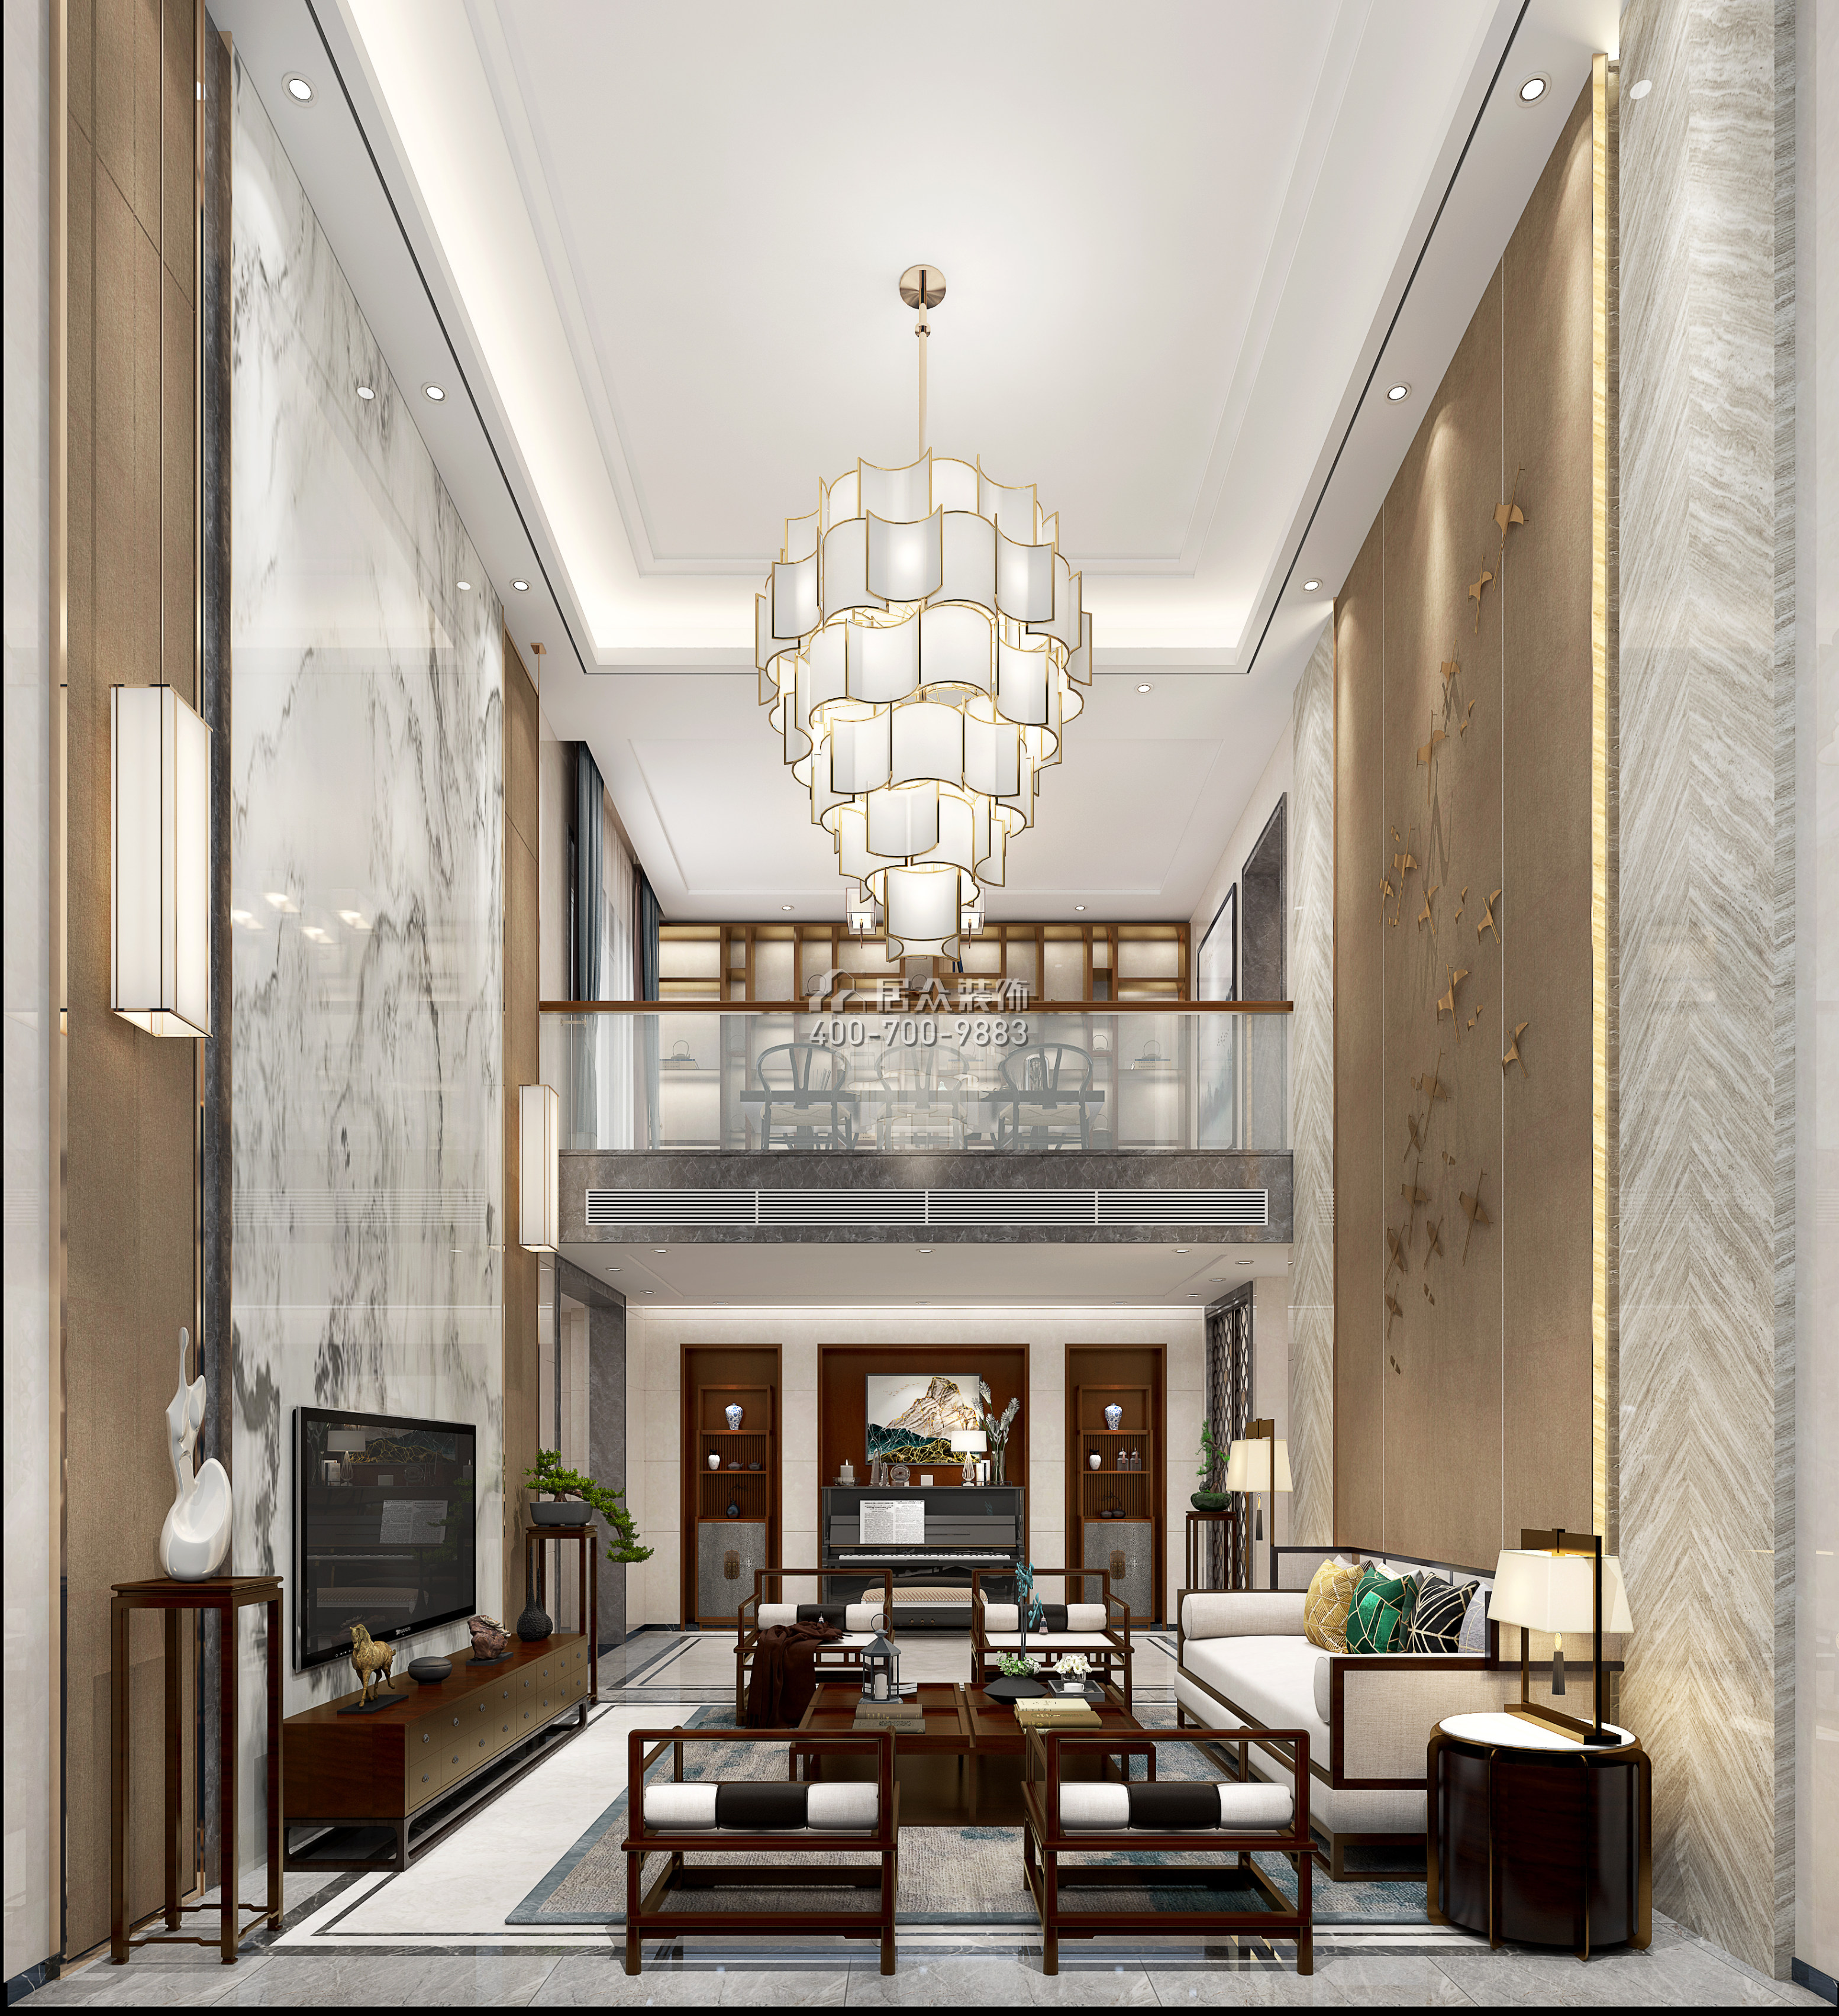 丽水佳园390平方米中式风格别墅户型客厅装修效果图